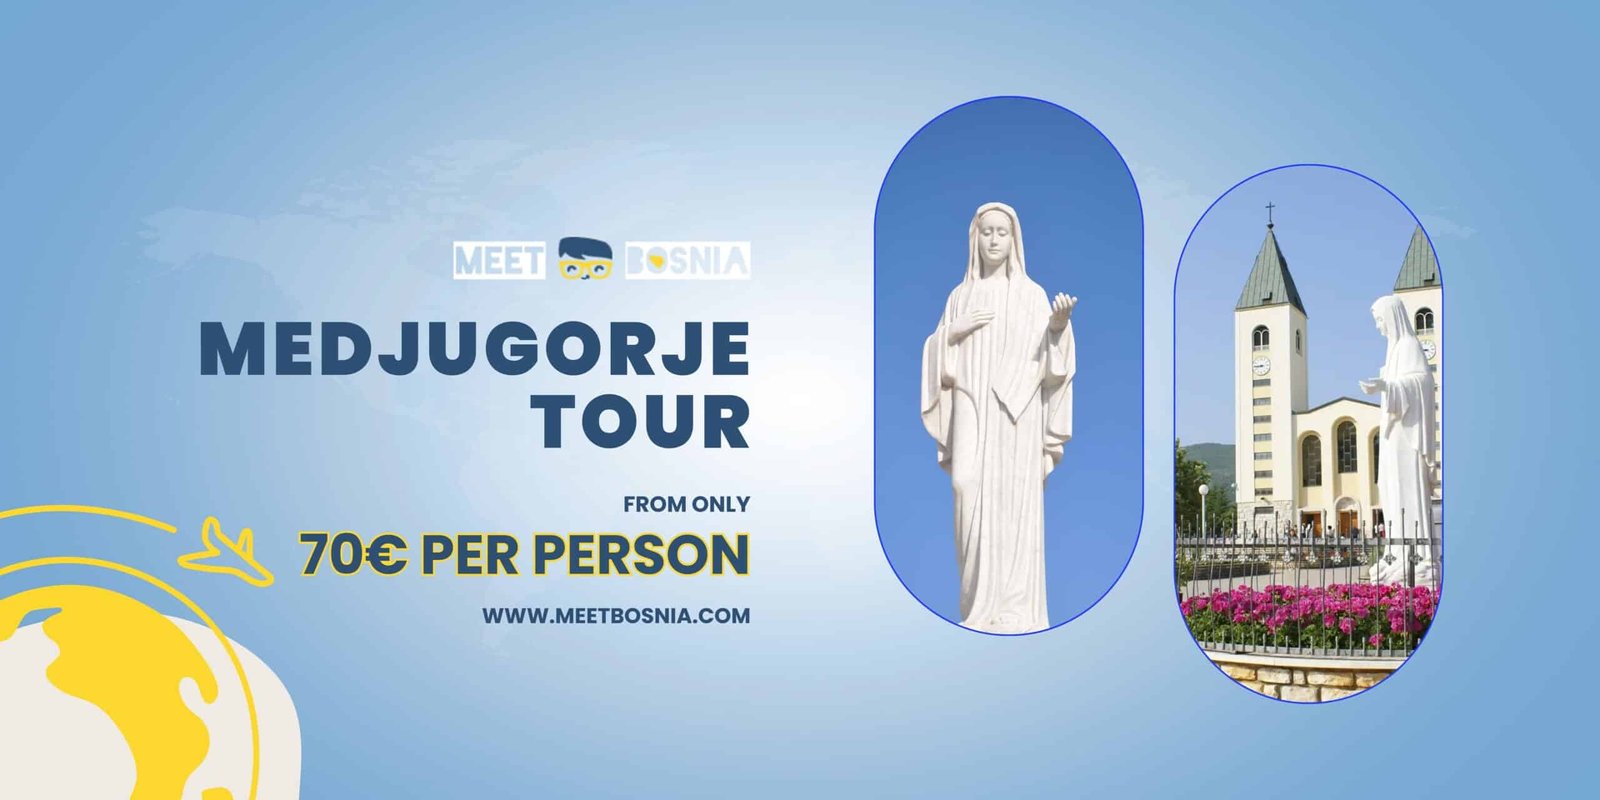 Medjugorje pilgrimage tour